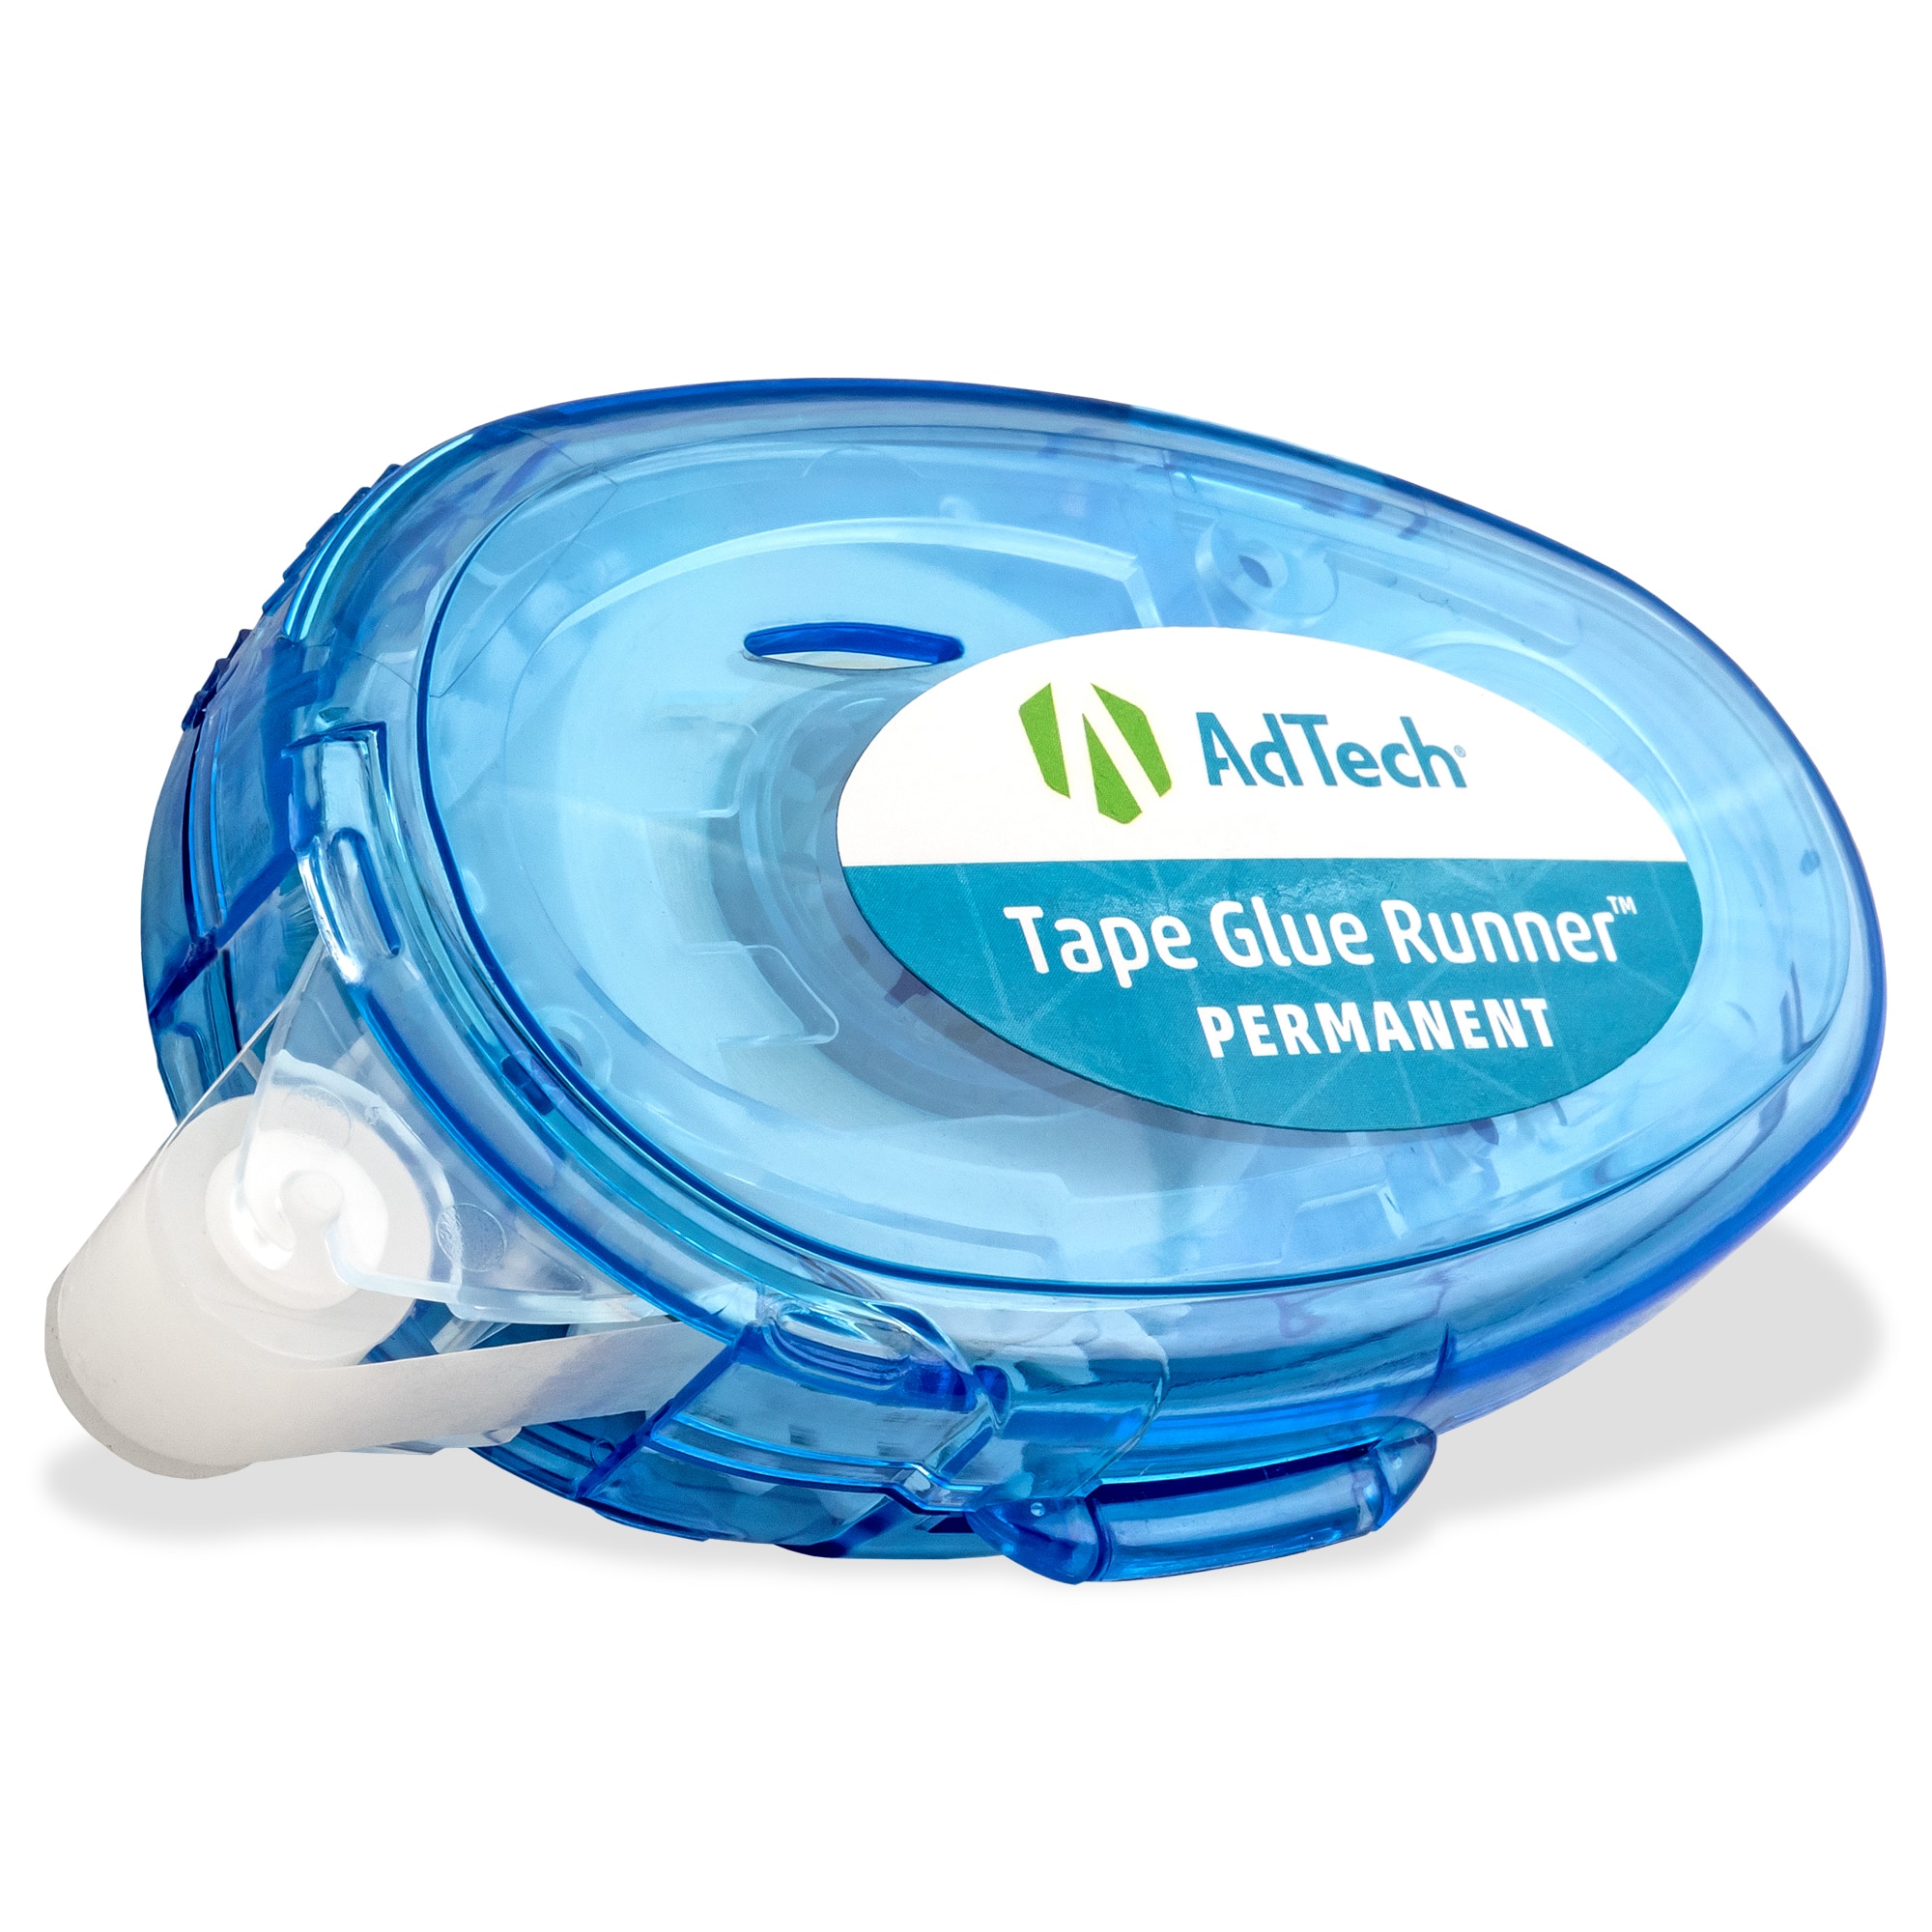 AdTech Tape Glue Runners 